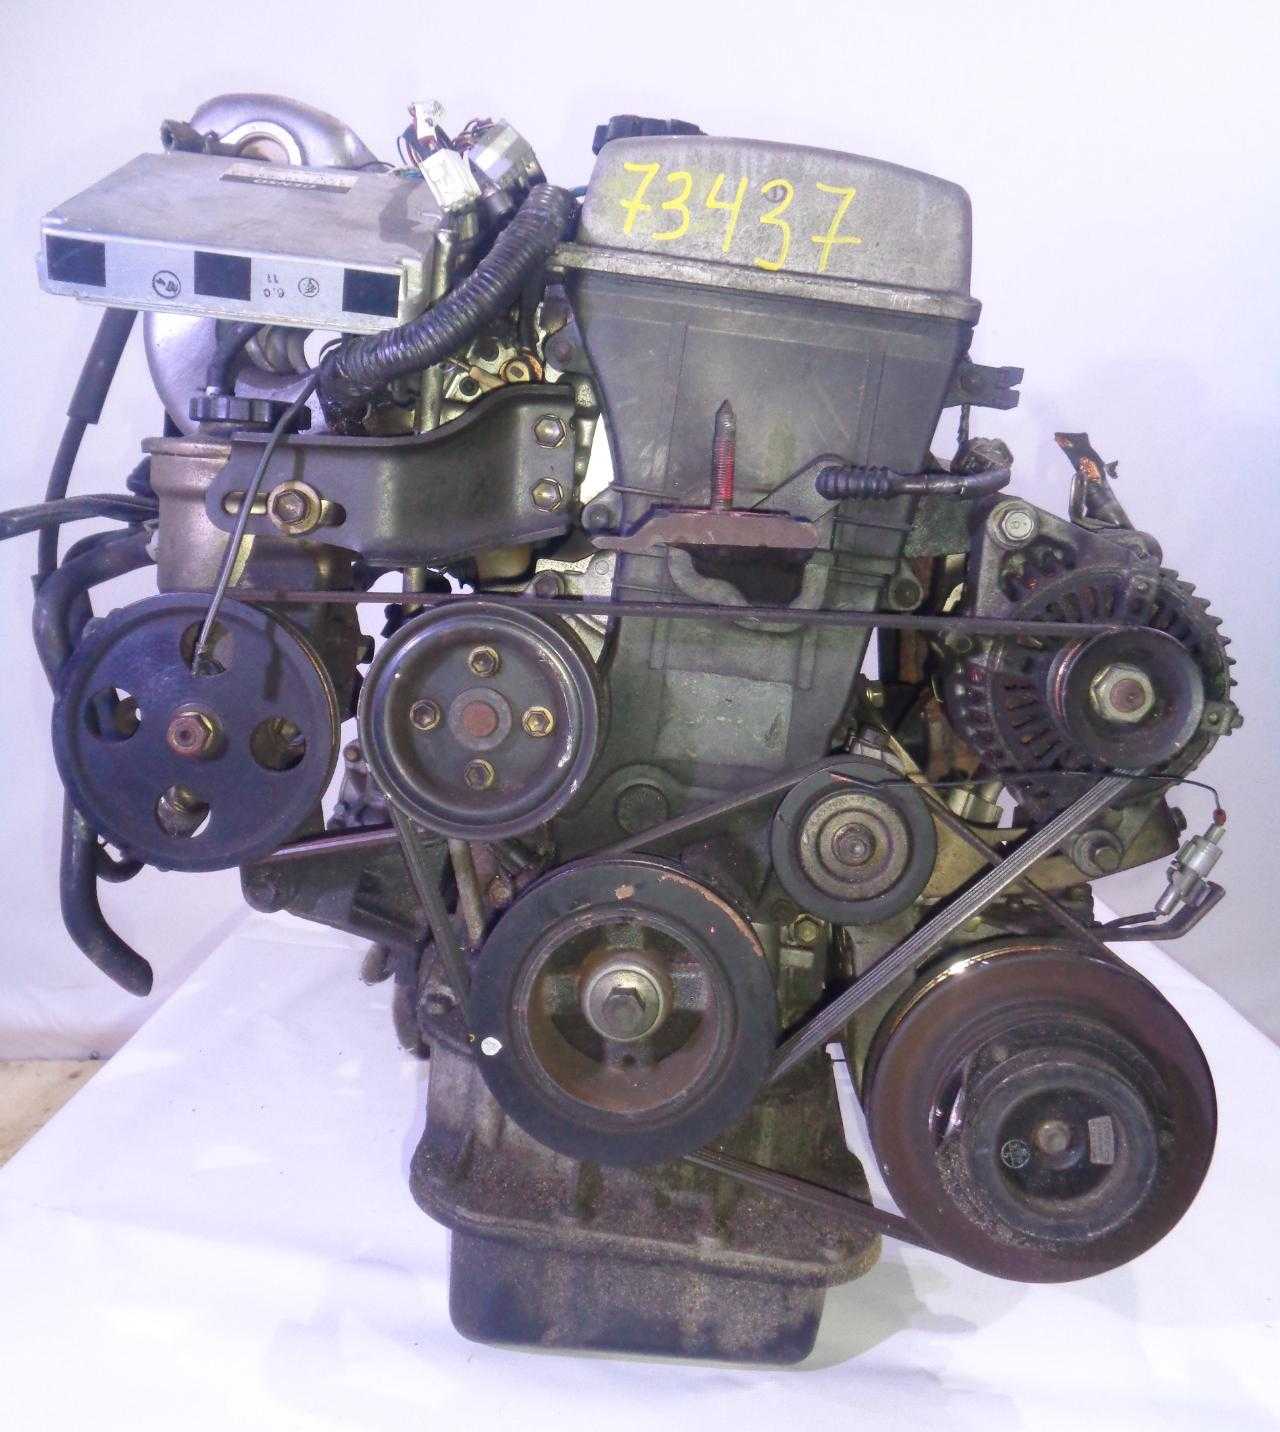 Двигатель 7A-FE один из самых популярных в серии А Мотор 7A-FE производился с 1990 года, за это время была всего одна версия и несколько ее вариаций с разбросом мощности от 103 до 120 лошадиных сил Так же нельзя не отметить версию с системой Lean Burn, он